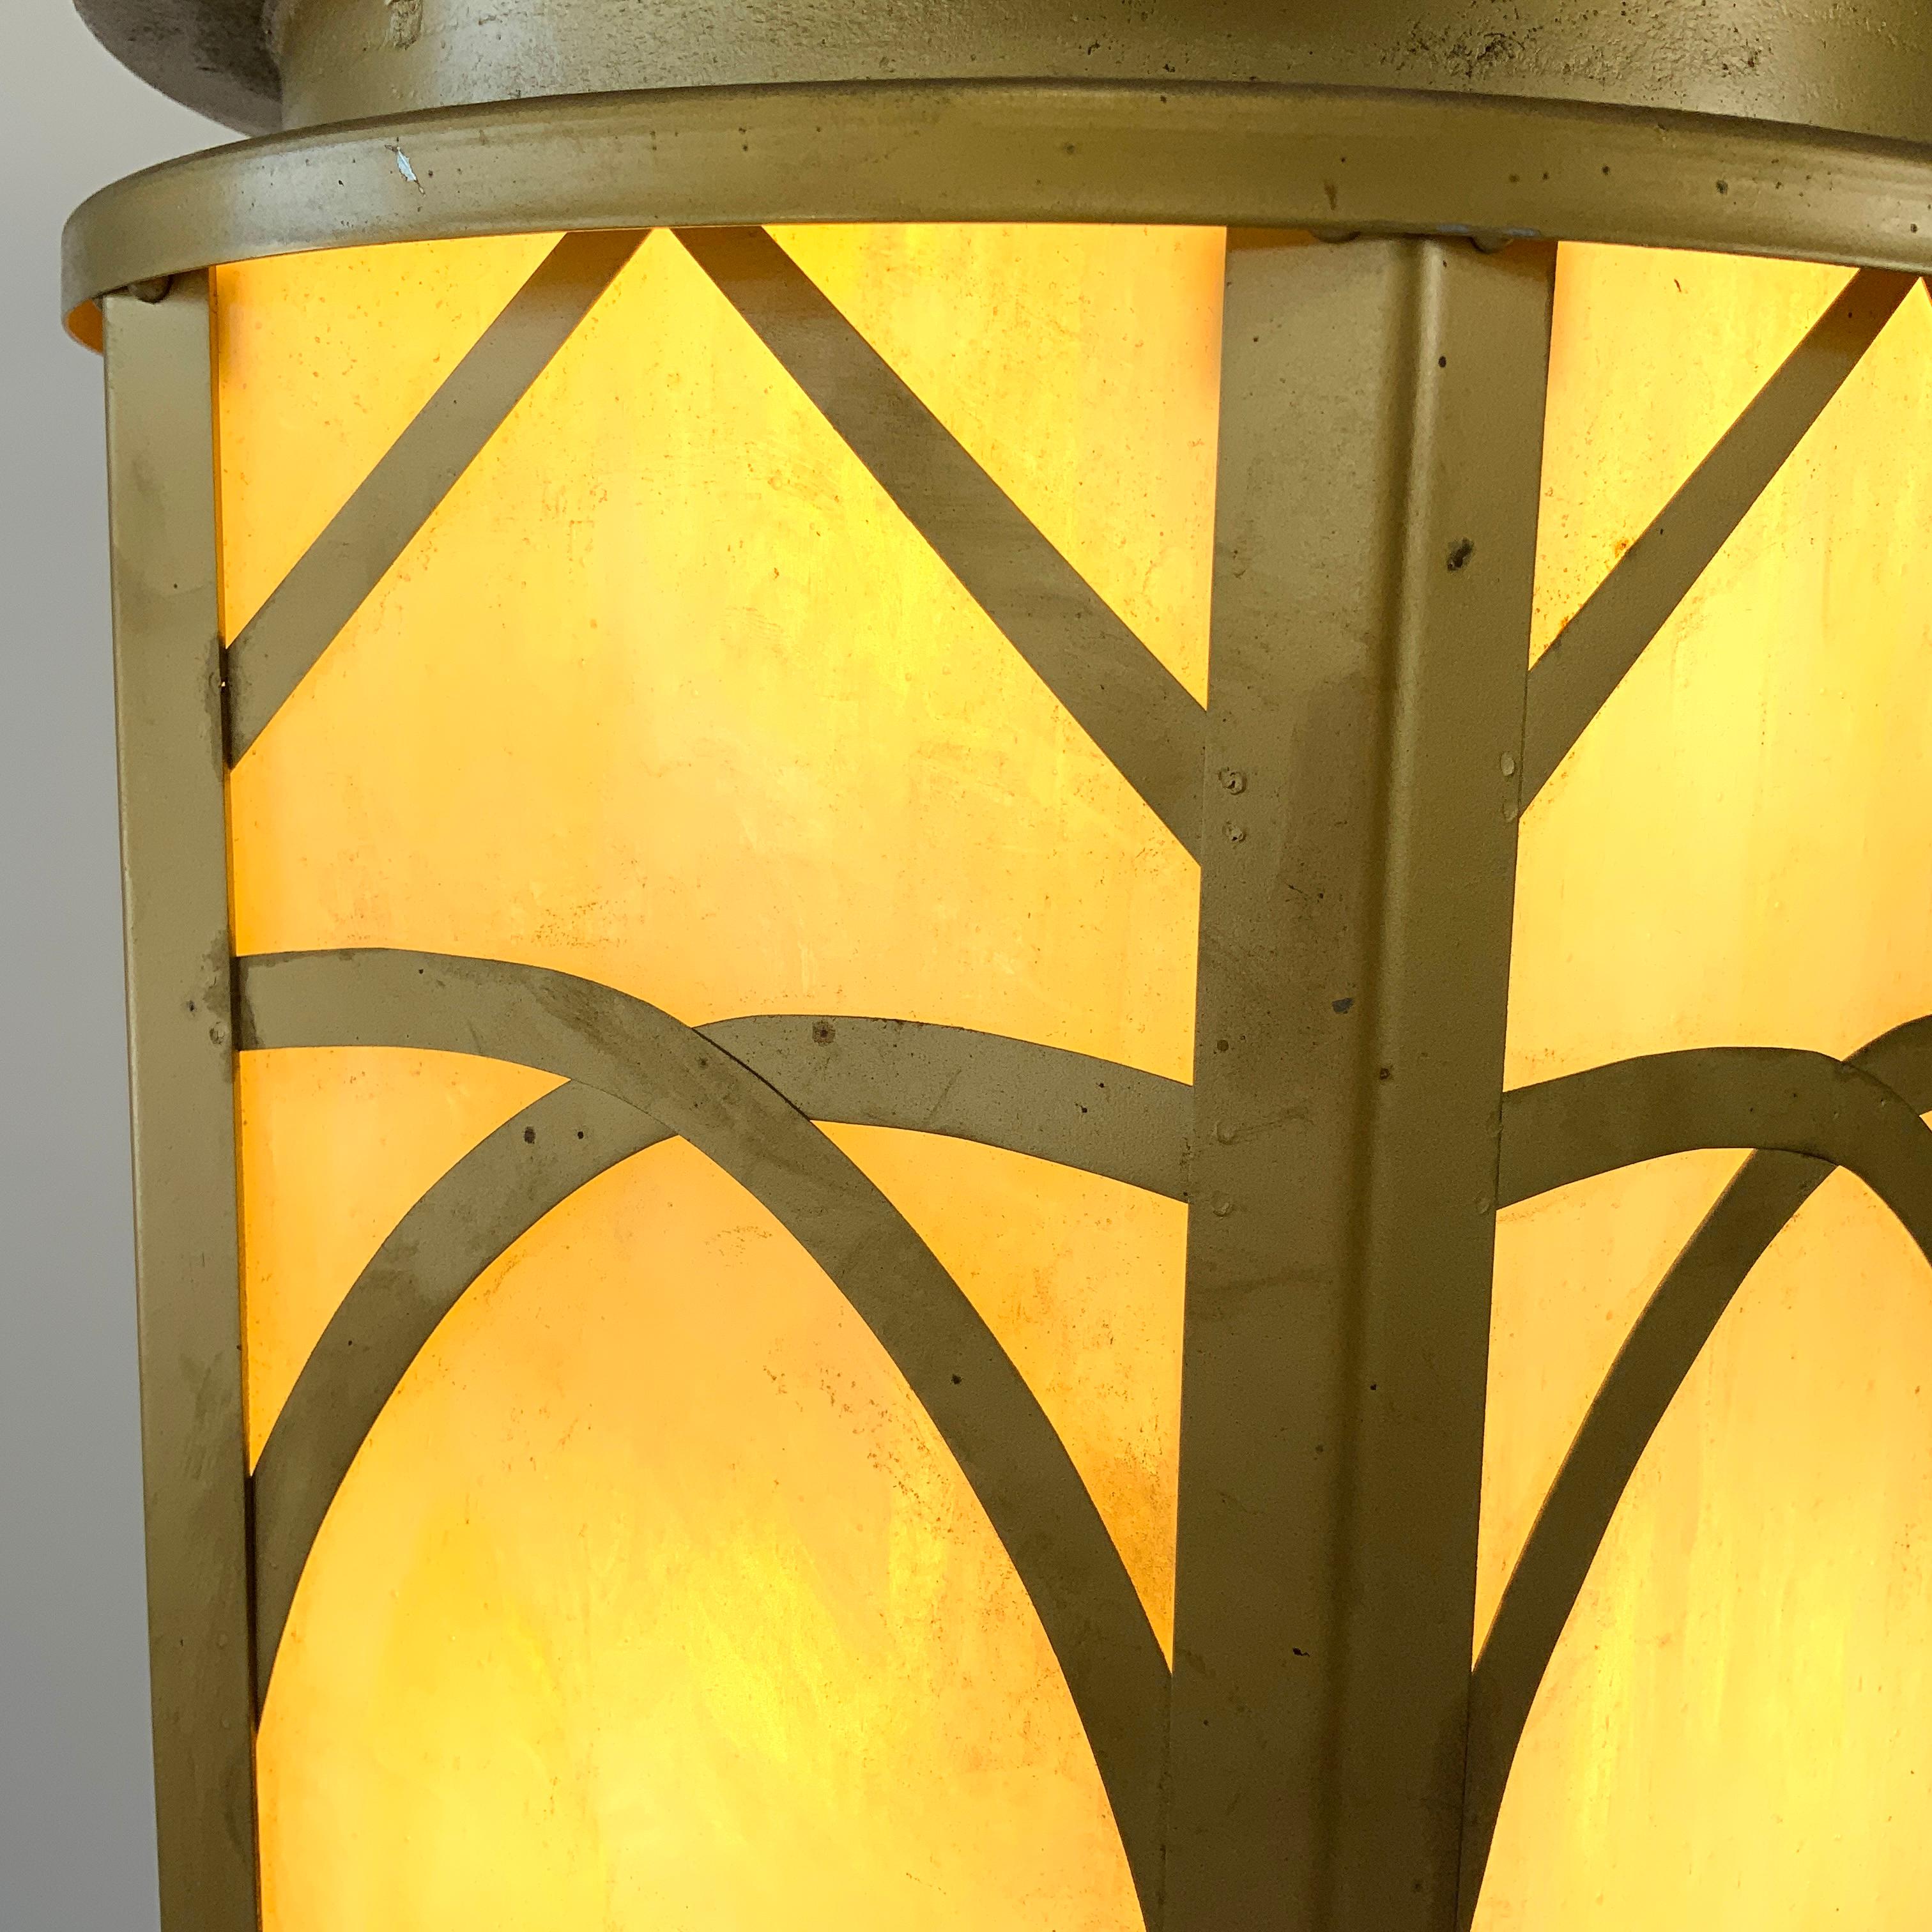 Une paire de lampes cathédrales inhabituelles à six côtés (hexagonales), le cadre principal en tôle et la couronne en fonte de 0,25 pouce. Le vitrail est un verre de scorie marbré crème-jaune clair. Outre le motif métallique entrelacé typique de